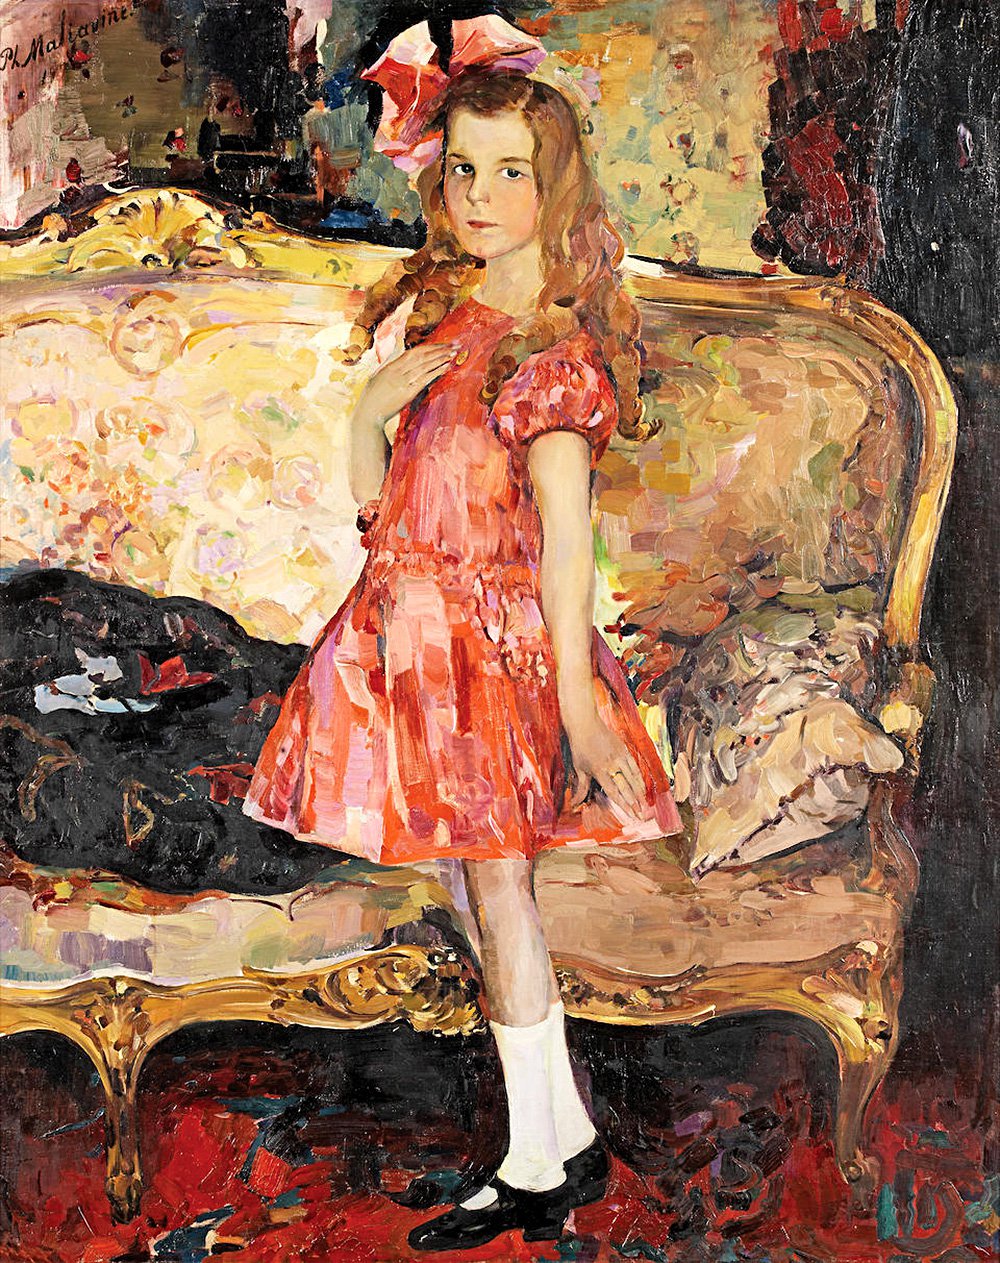 Филипп Малявин. «Портрет девочки в розовом платье». 1910-е. Русские торги, Лондон, 5 июня 2019 г. Эстимейт £300–500 тыс. Фото: Bonhams